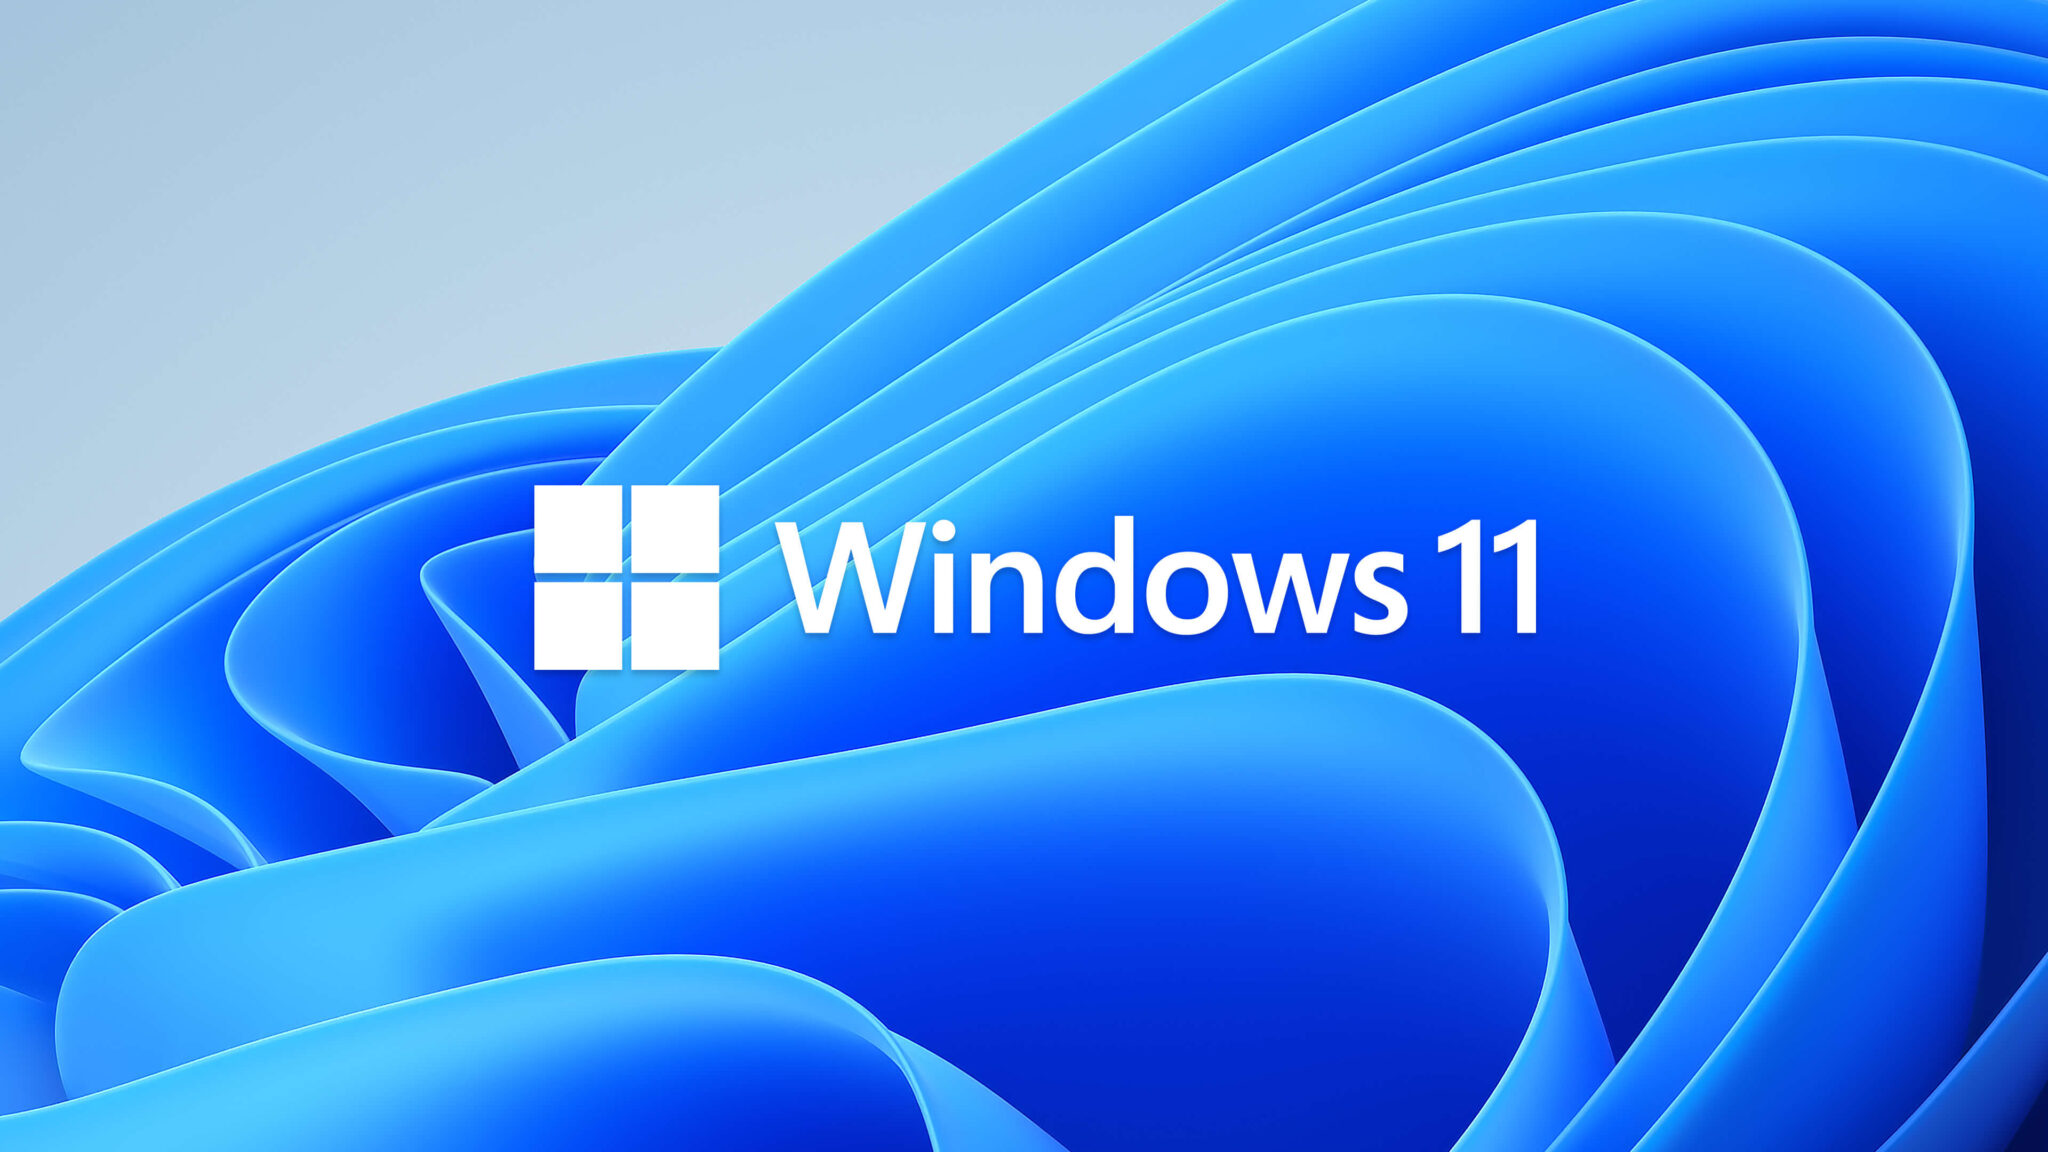 Windows 11 live wallpaper - vseplanner